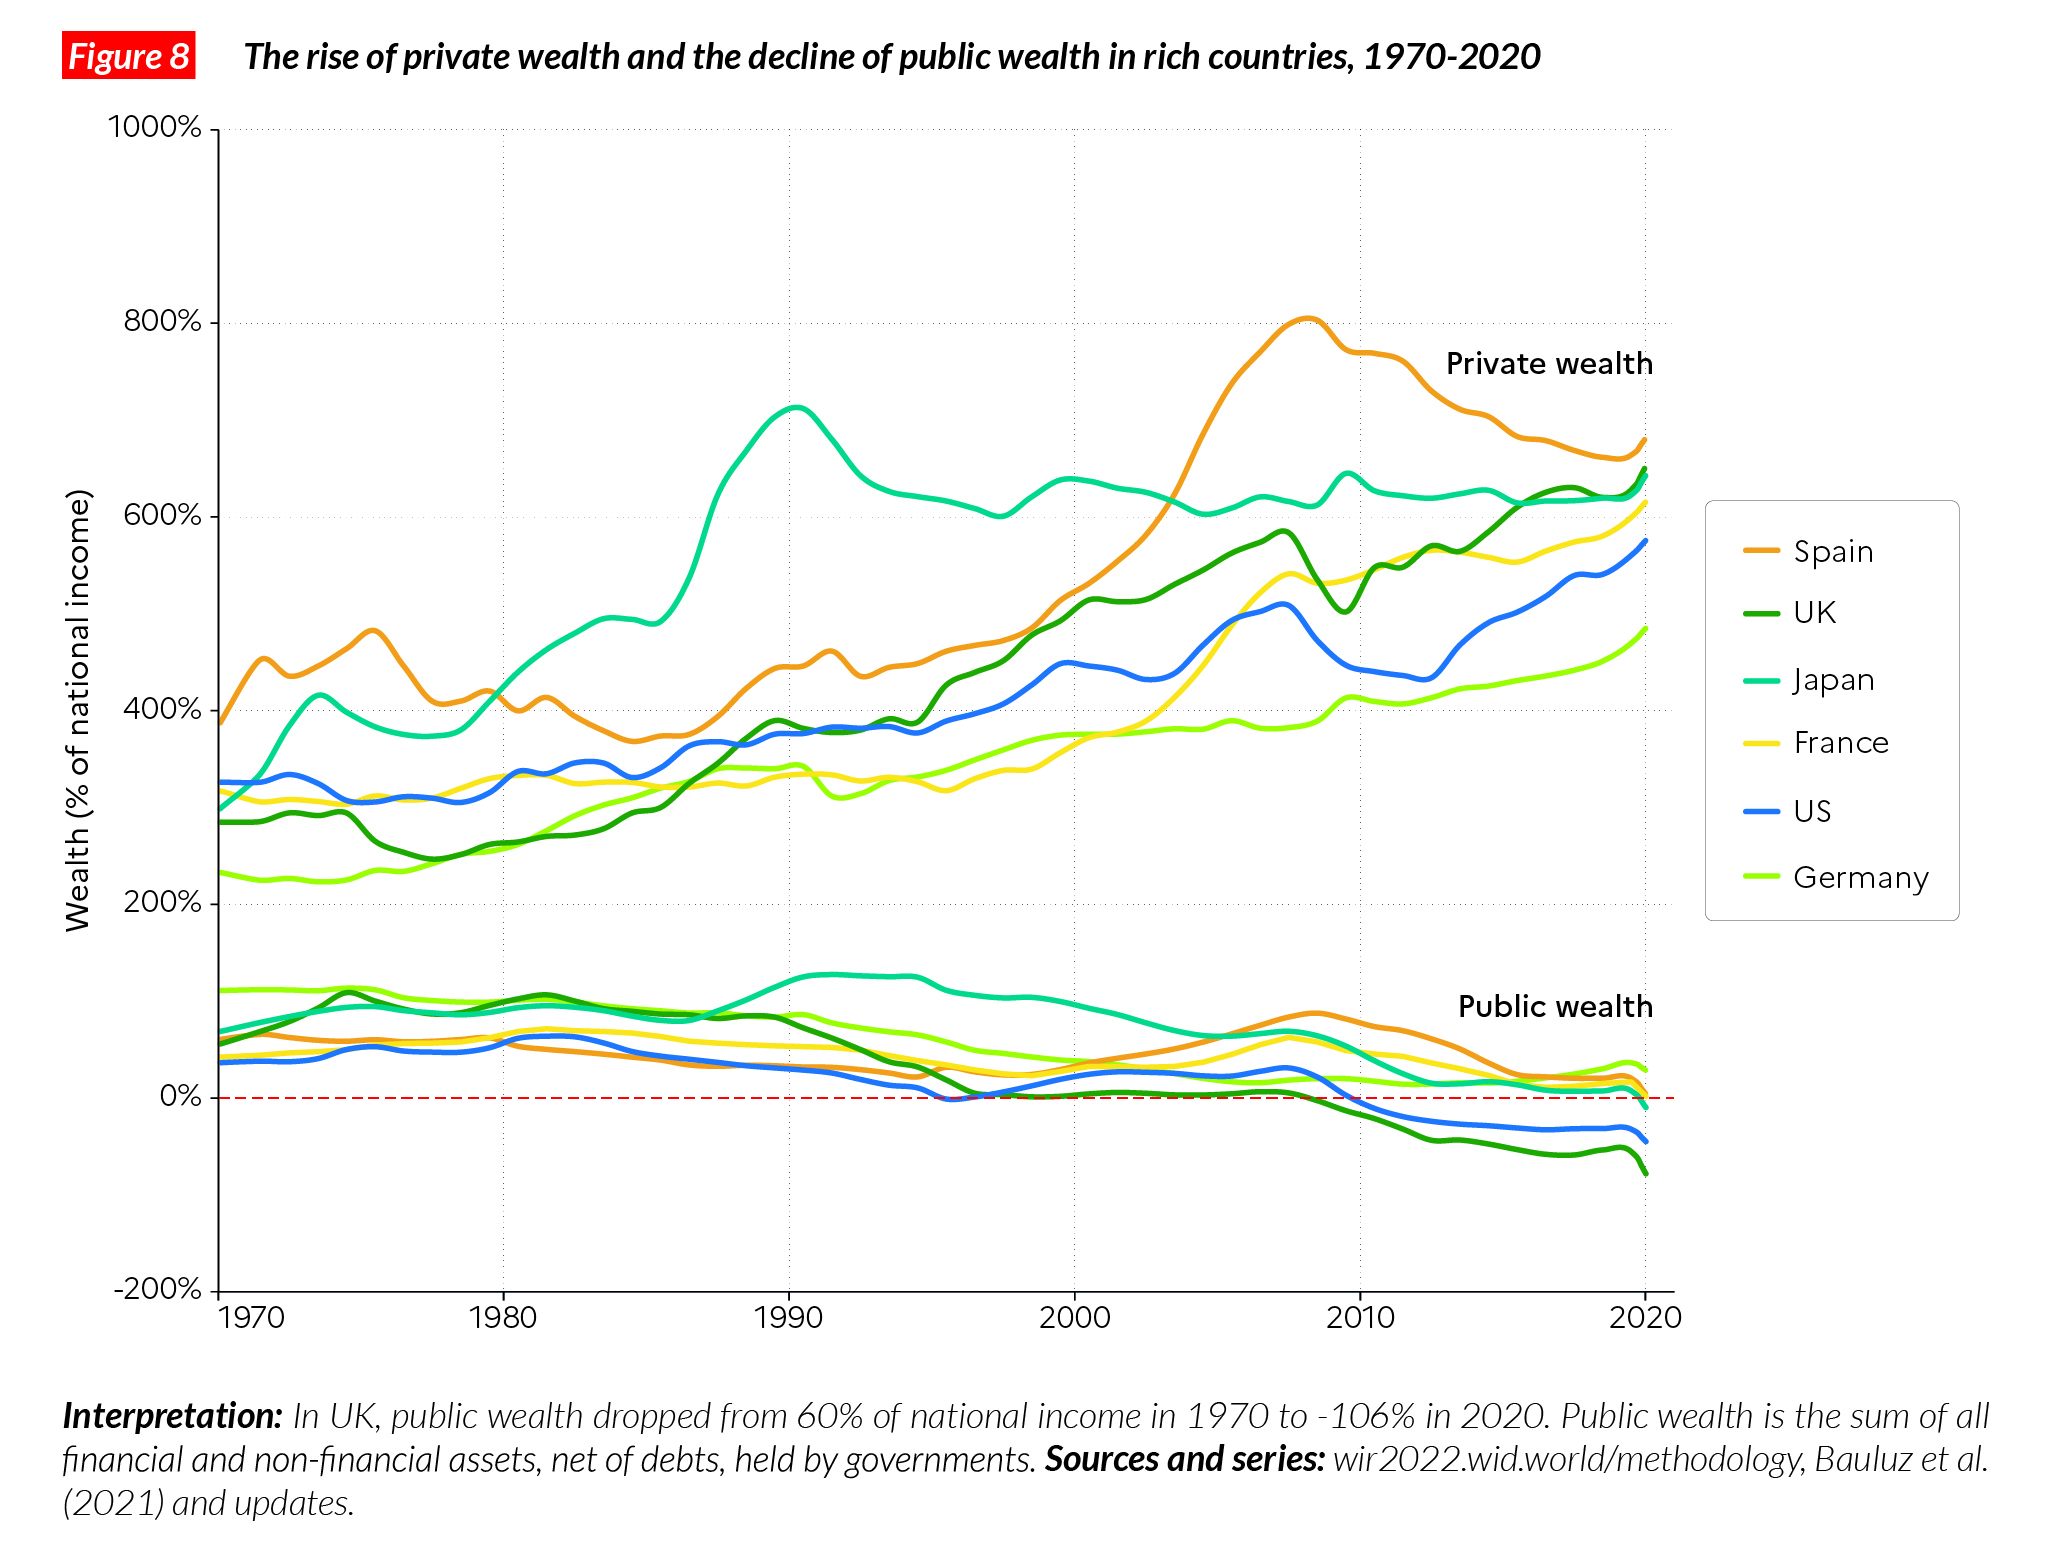 F8. Public vs Private wealth in rich countries